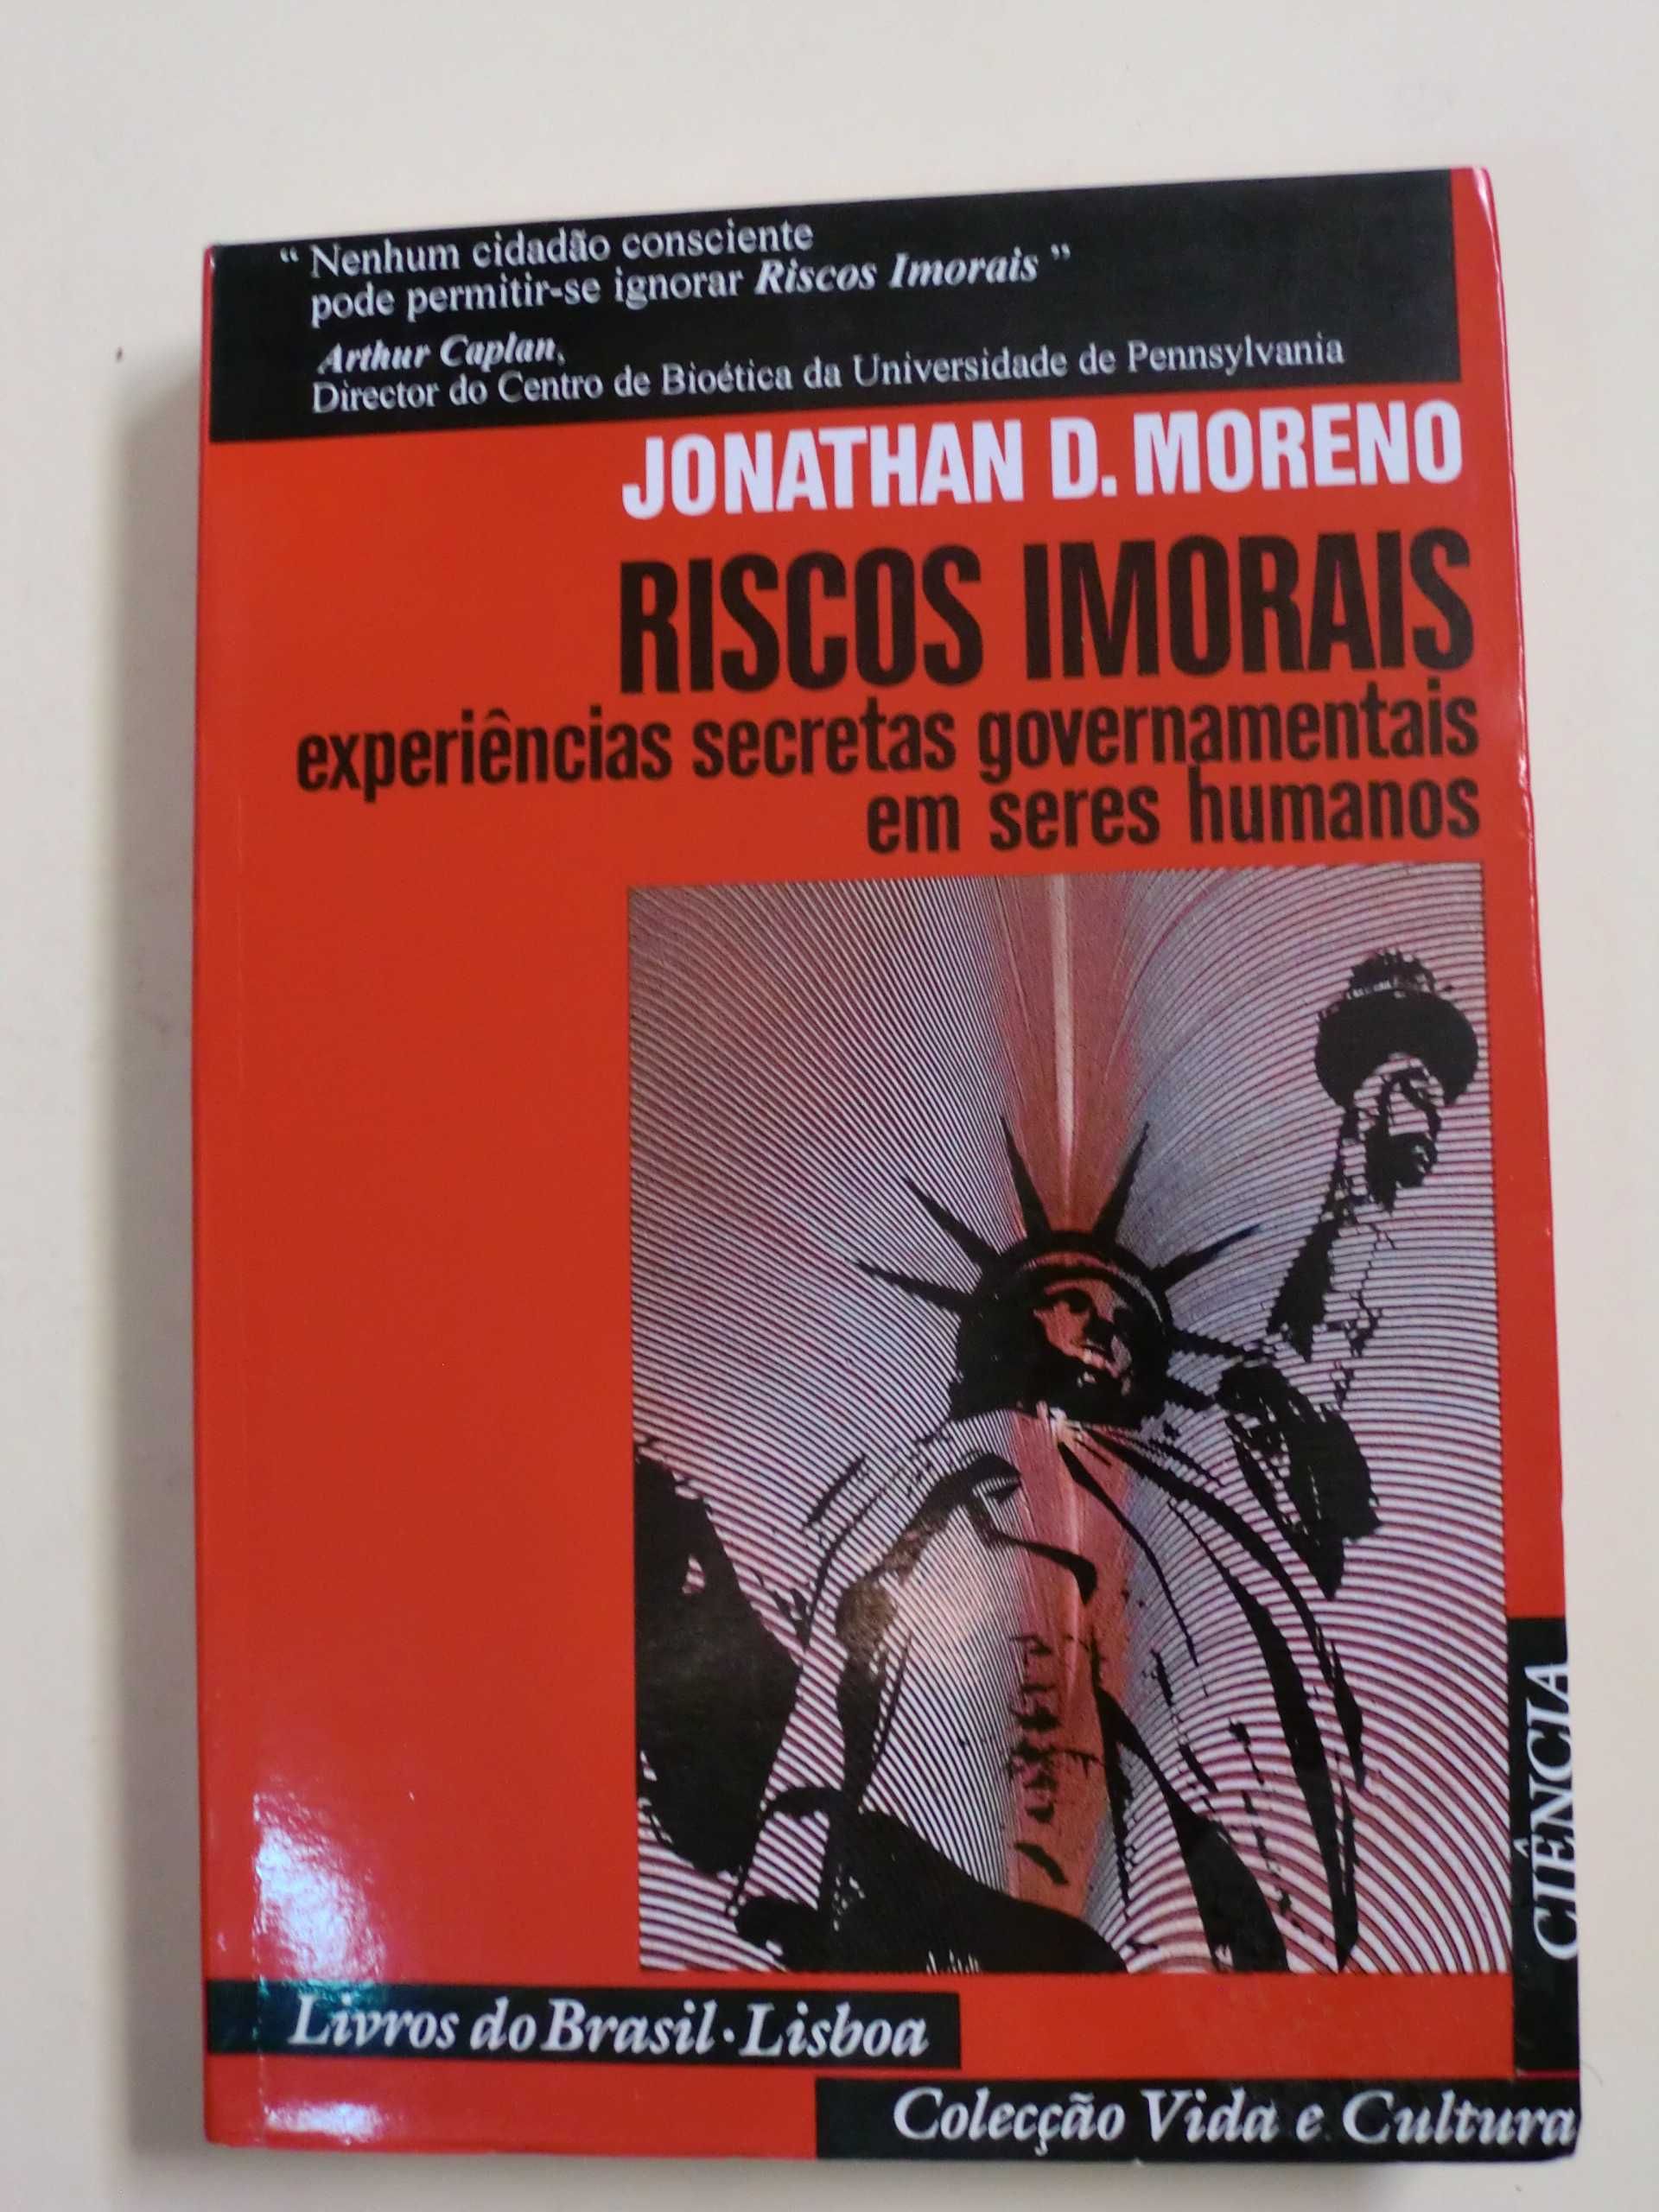 Riscos Imorais
de Joanathan D. Moreno